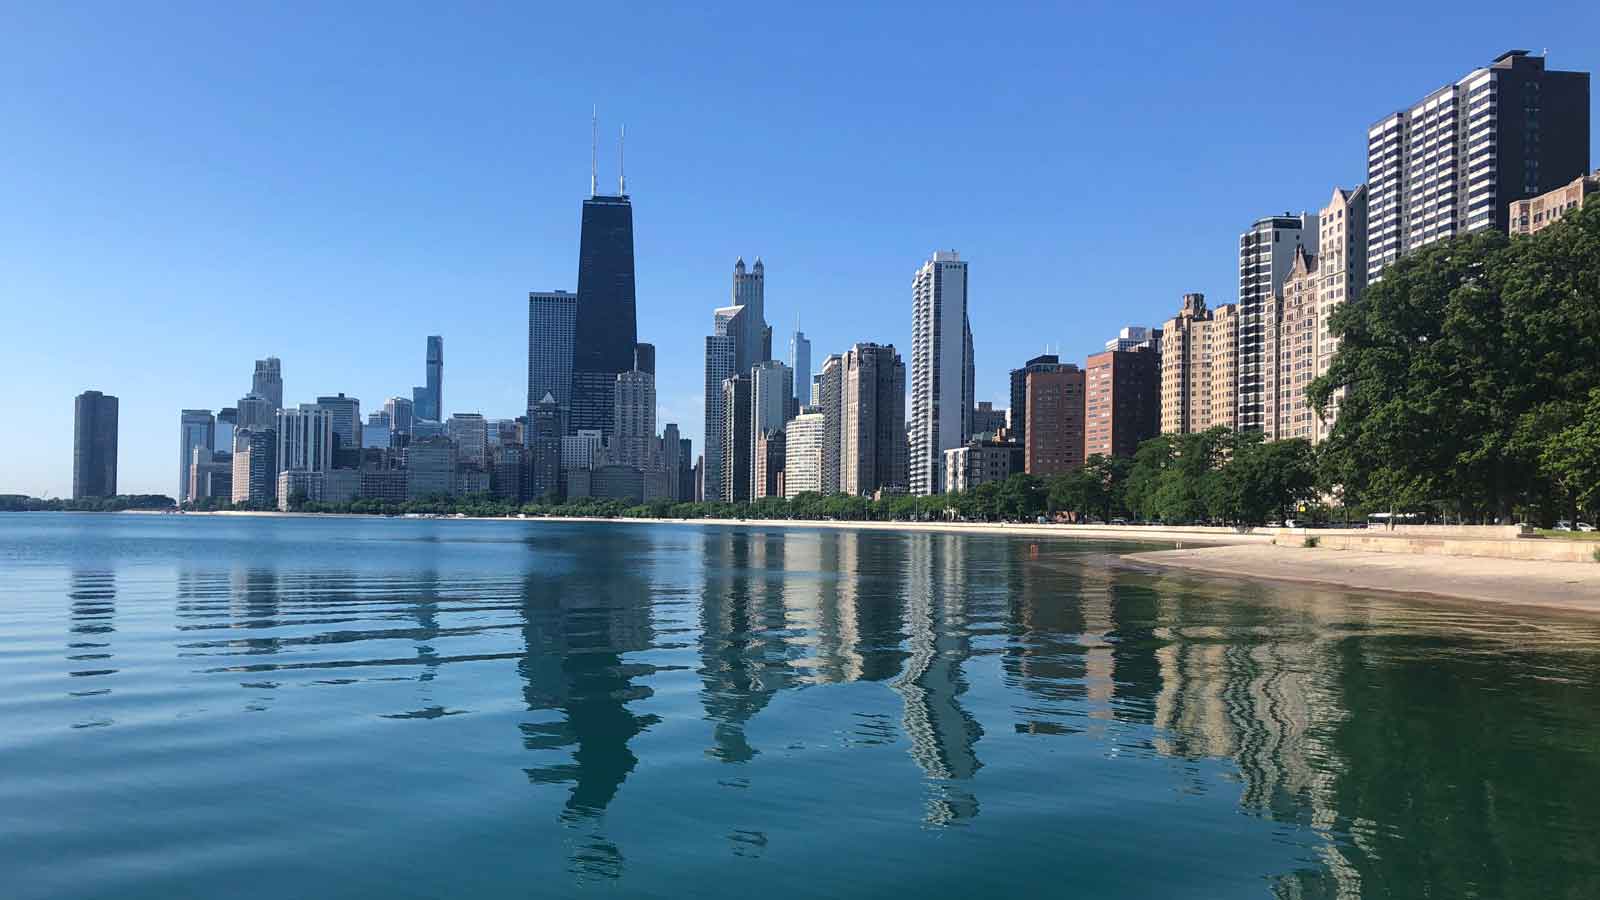 https://media.nbcchicago.com/2023/05/app-201222-chicago-skyline-1.jpg?quality=85&strip=all&fit=1600%2C900